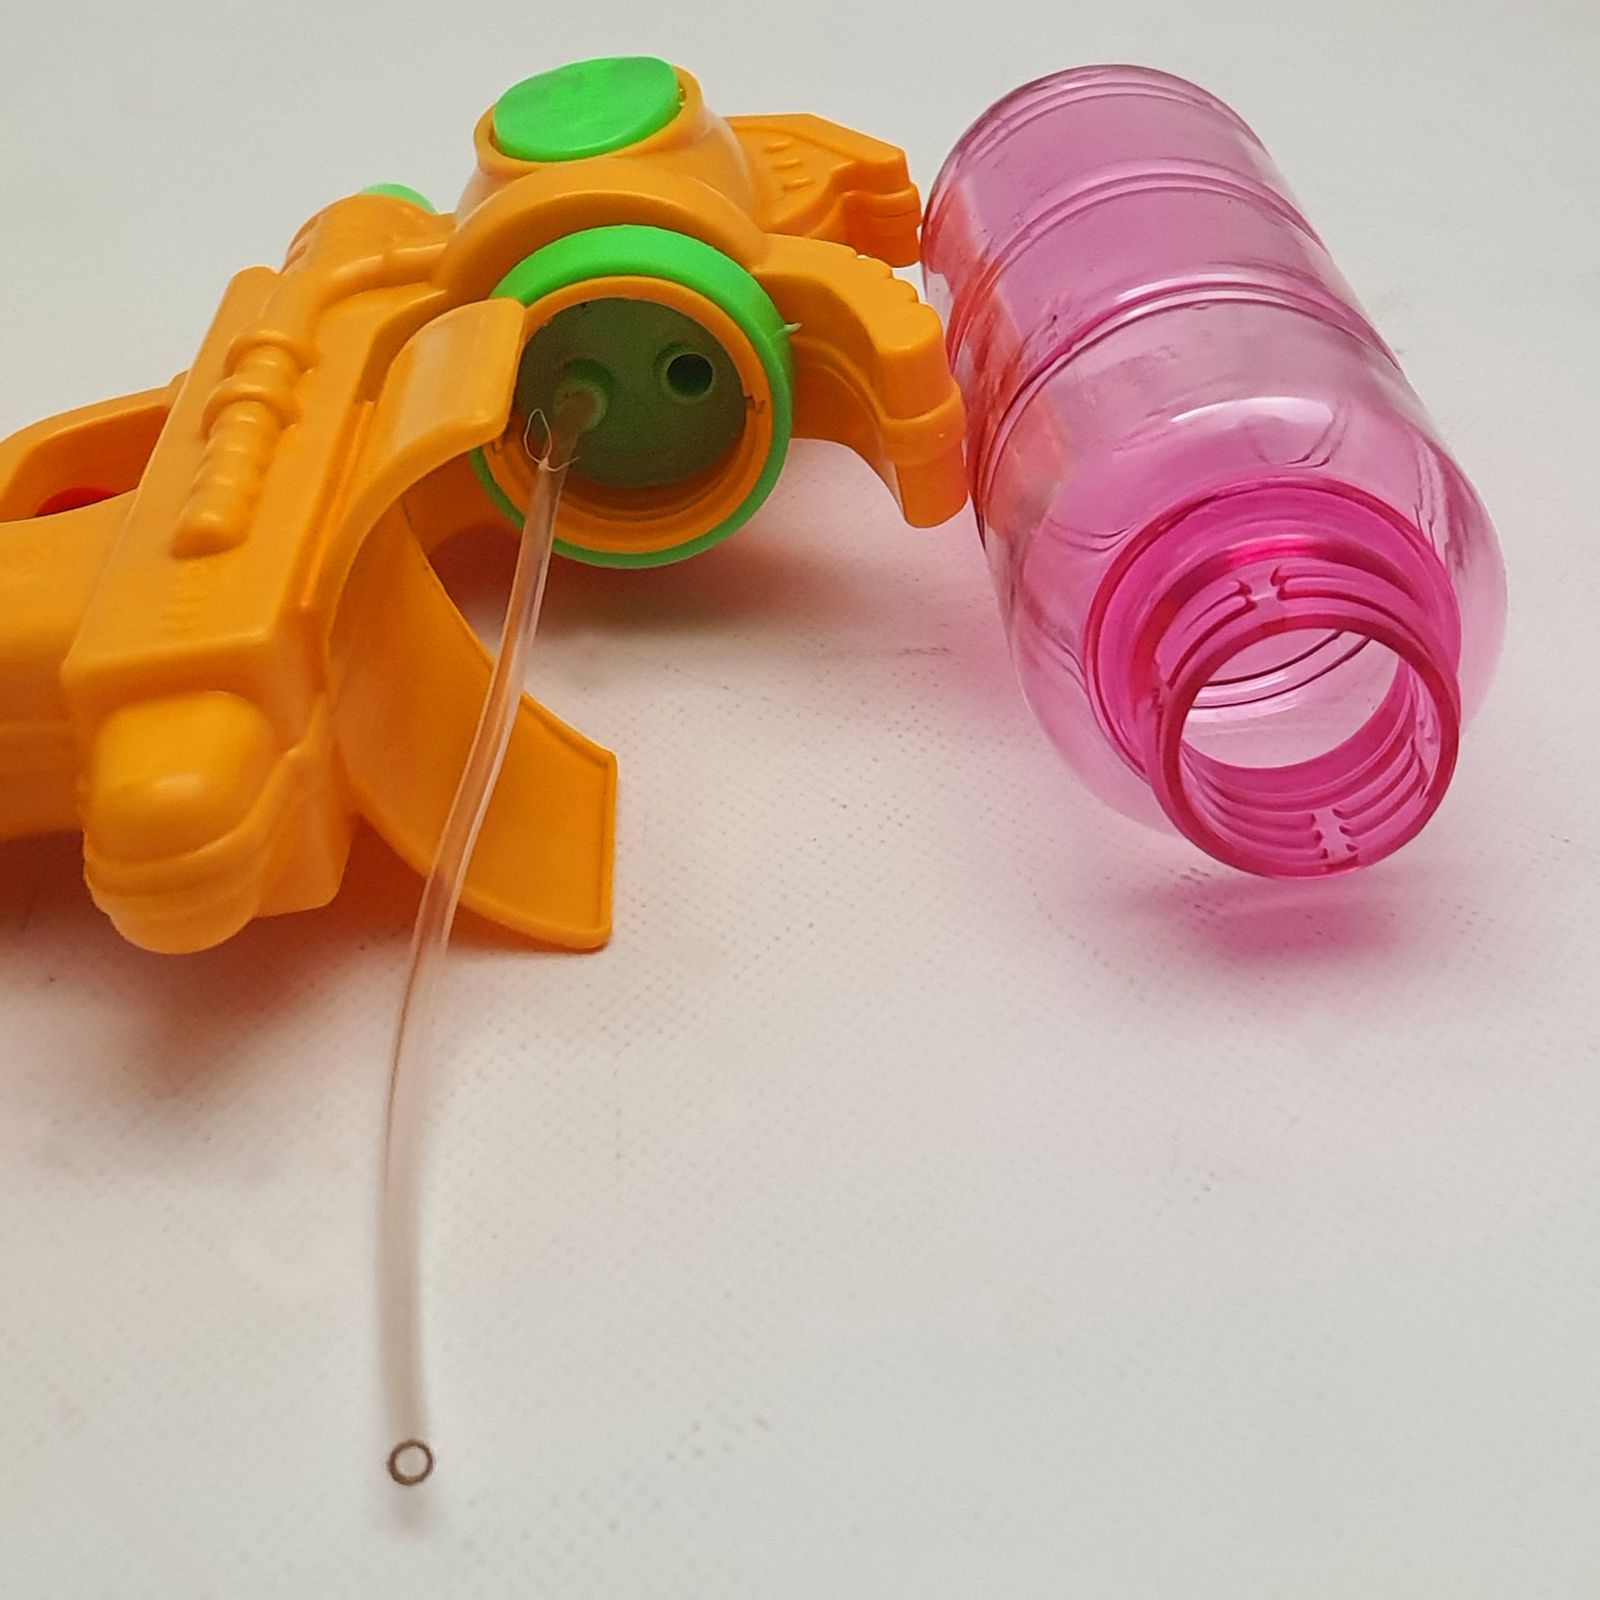 تفنگ بازی آب پاش مدل sprinkler -  - 4